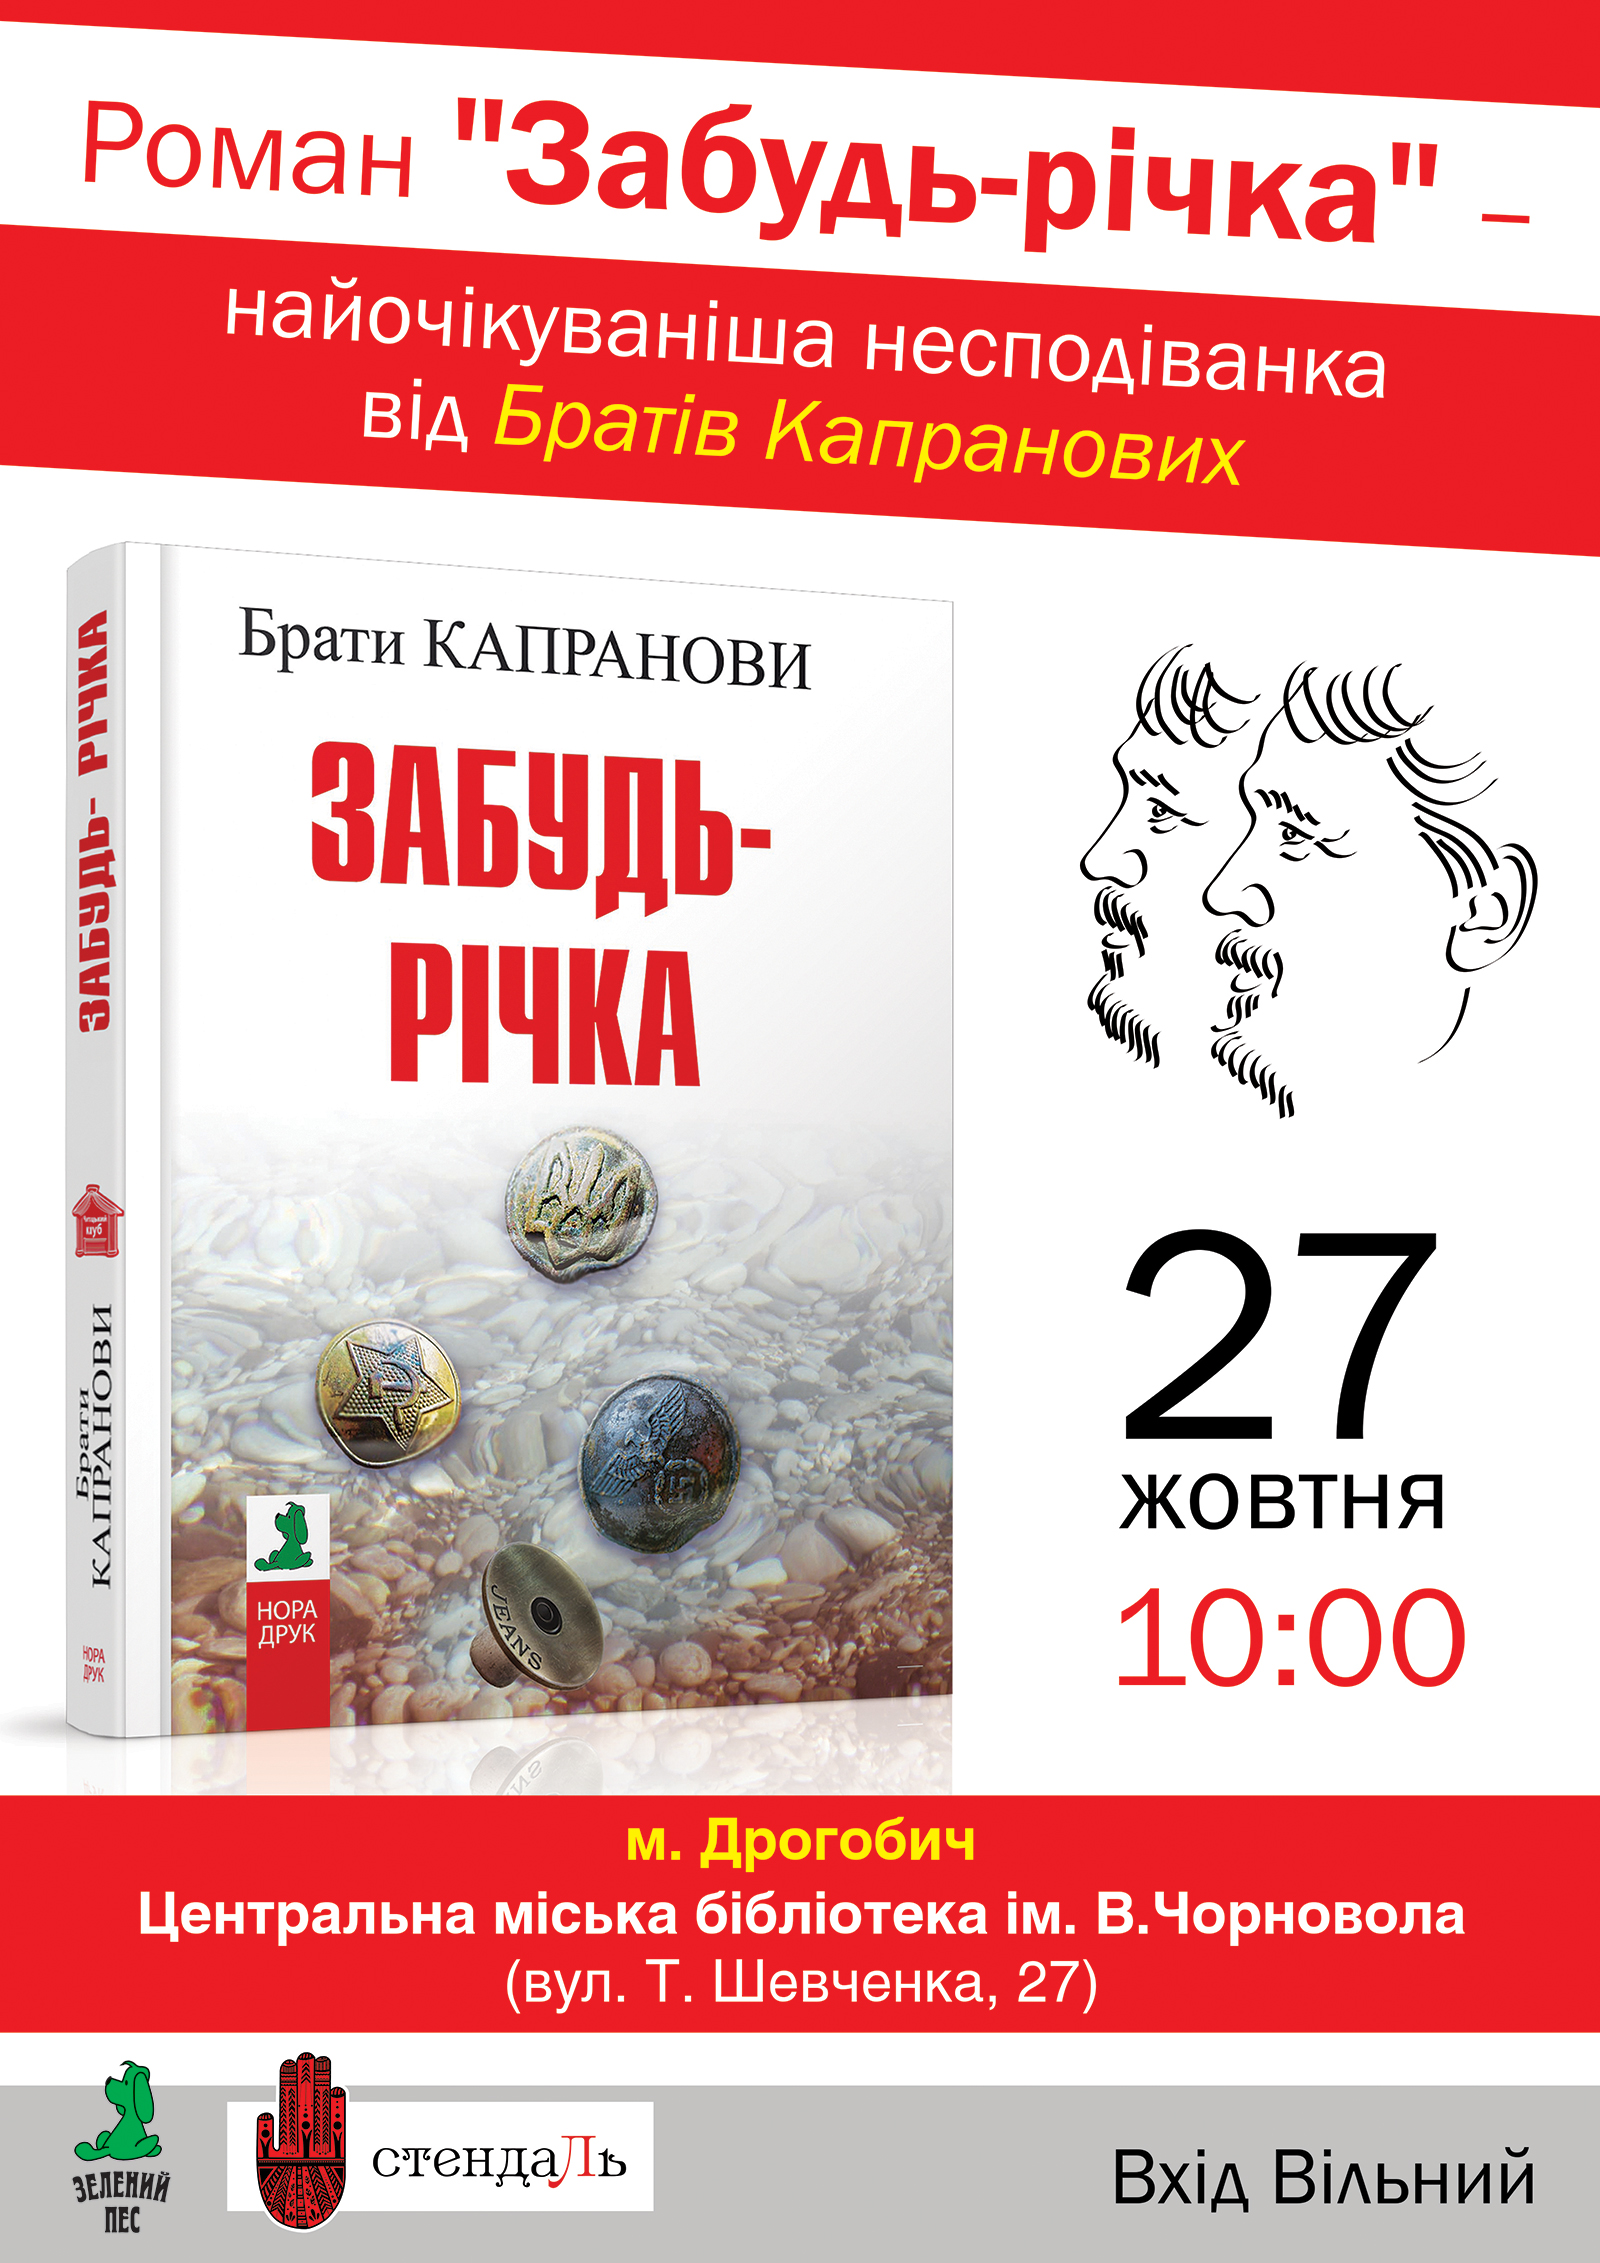 27 жовтня у Дрогобичі відбудеться презентація роману братів Капранових «Забудь-річка»